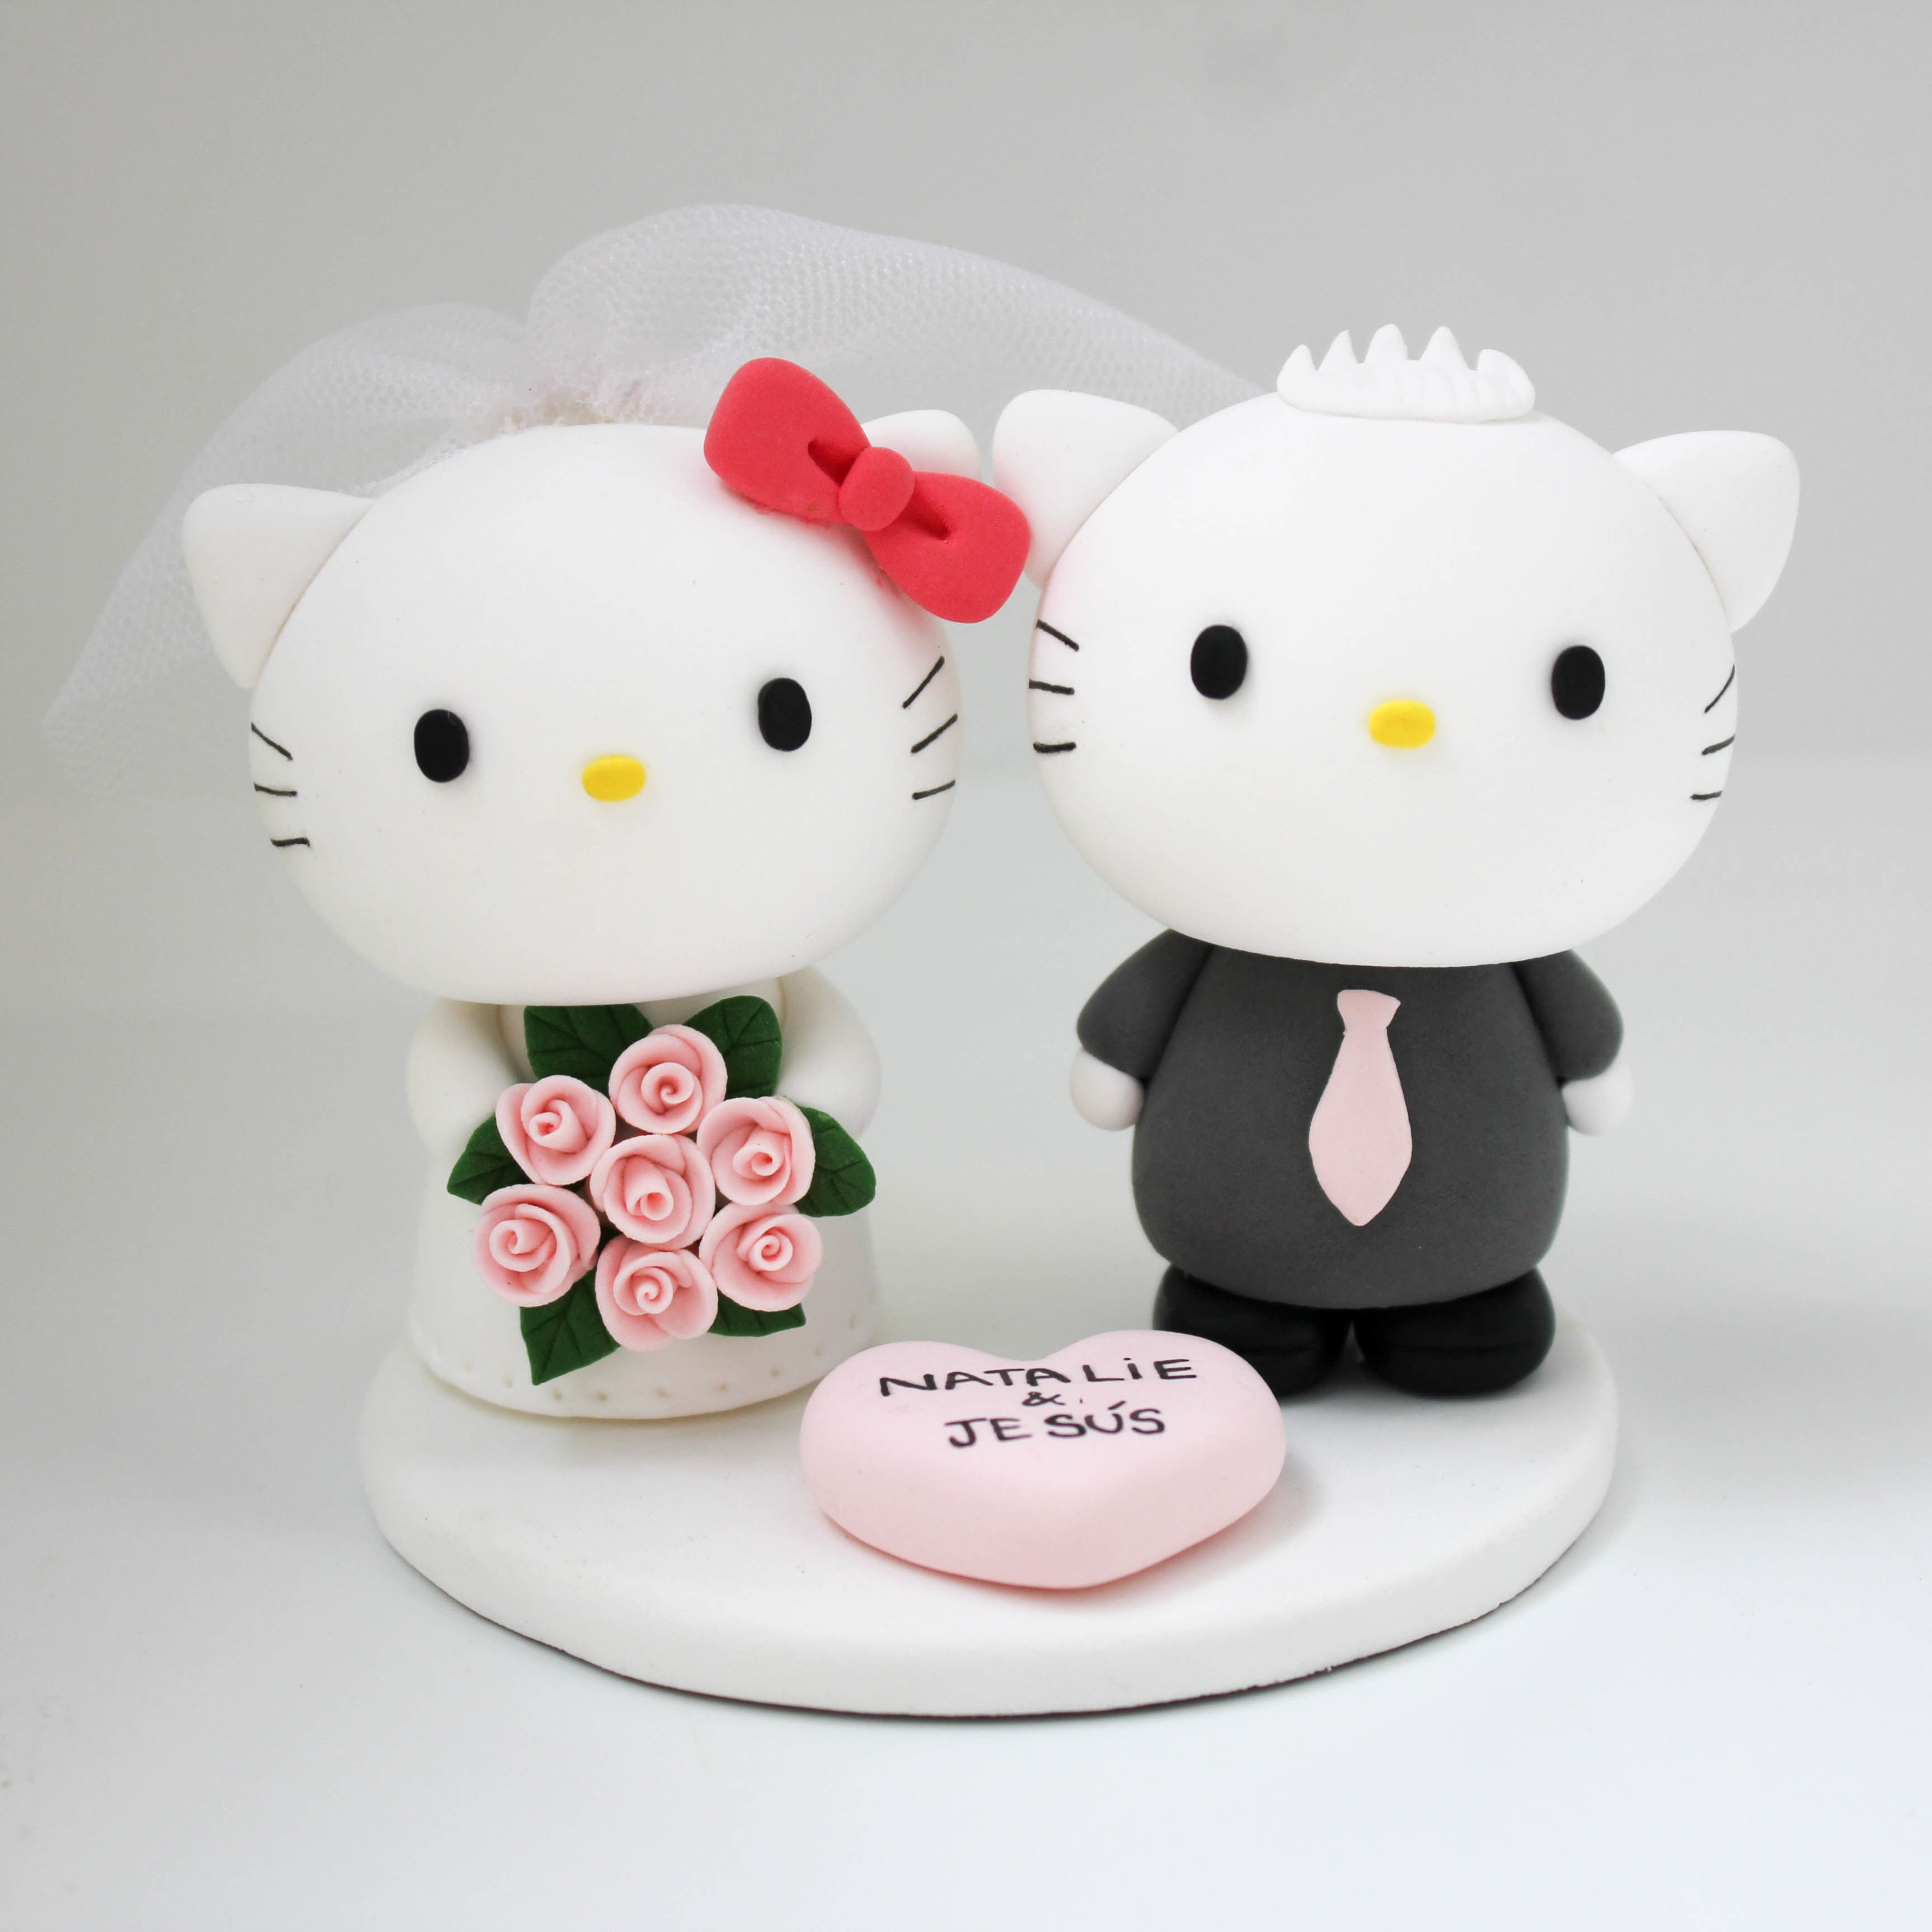 https://www.worldcaketopper.com/images/thumbs/0003189_hello-kitty-wedding-cake-topper_5500.jpeg